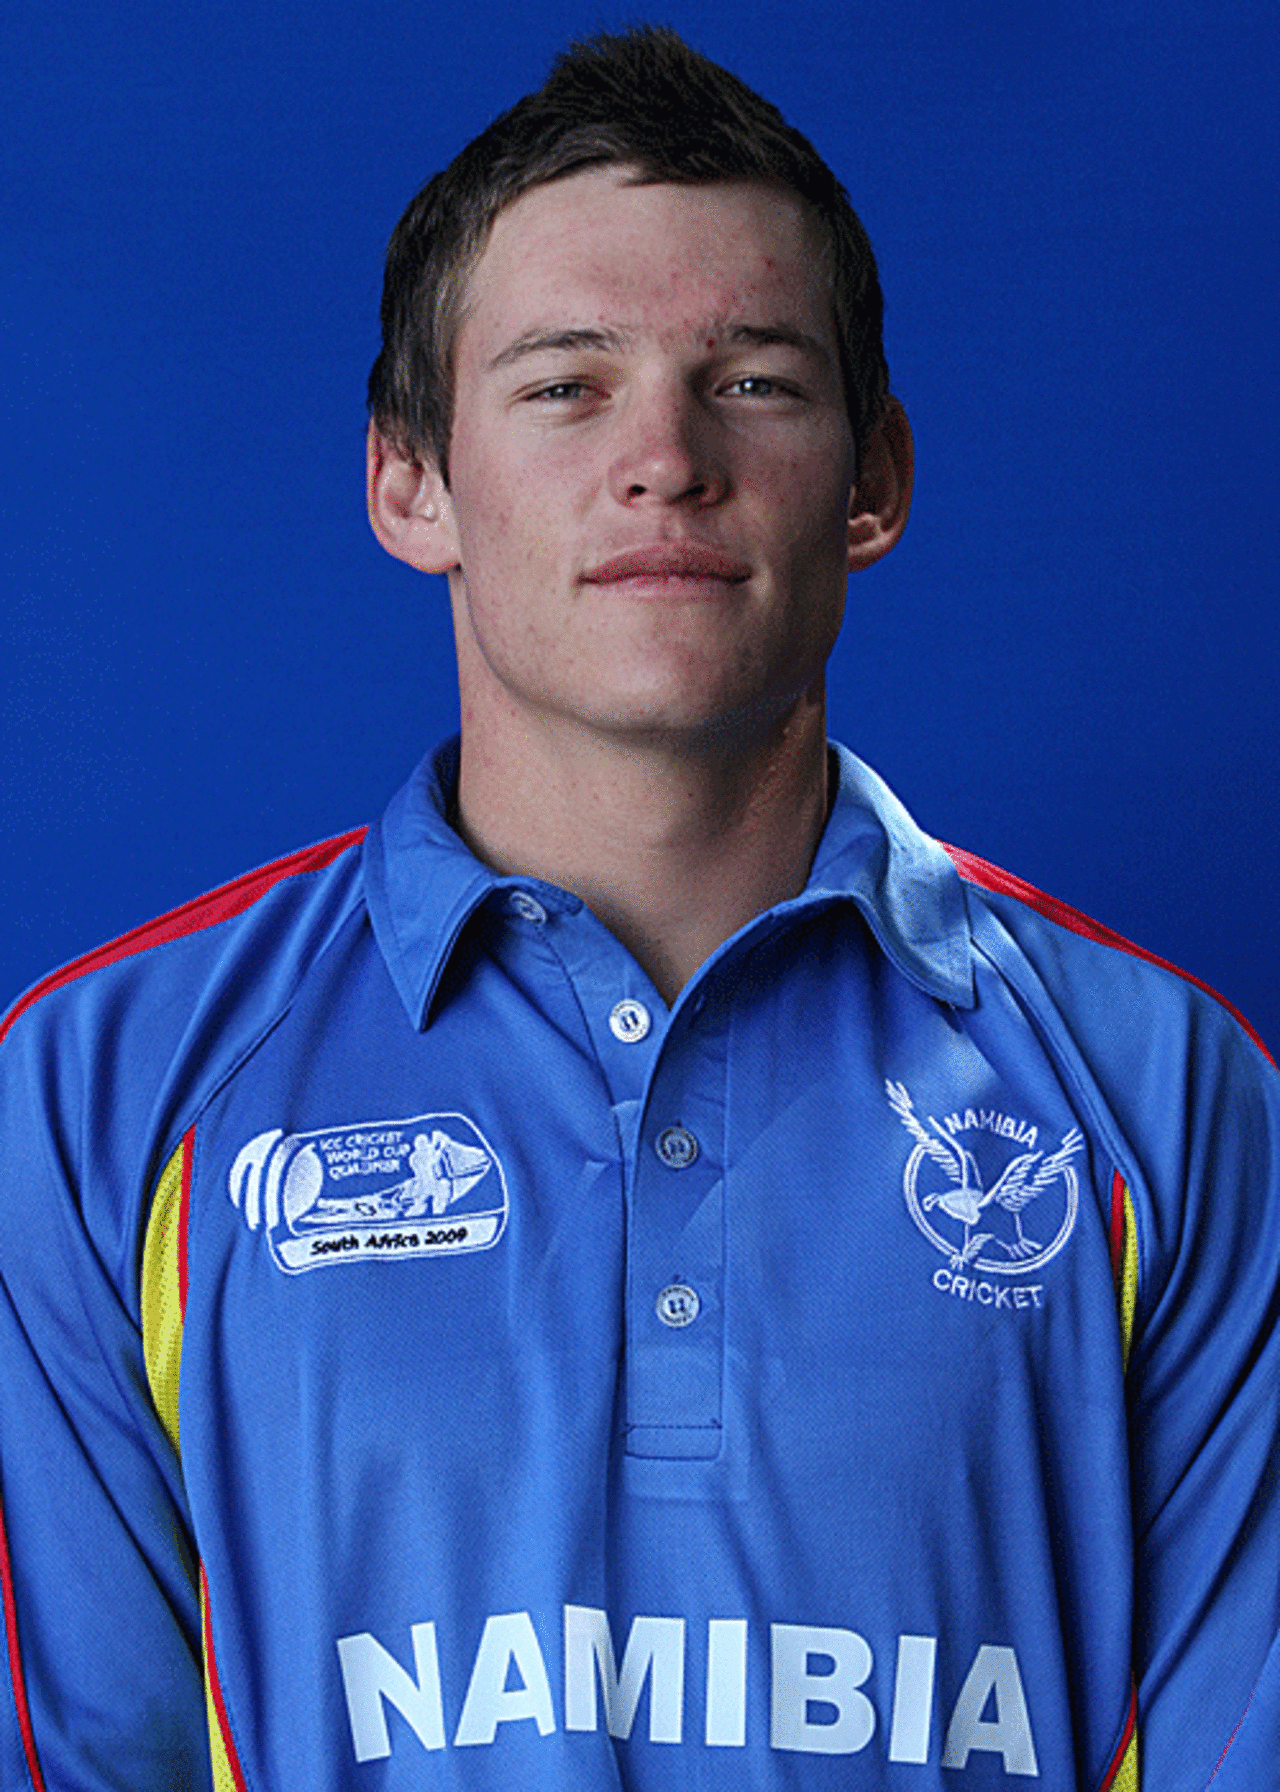 Louis van der Westhuizen player portrait, April 4, 2009